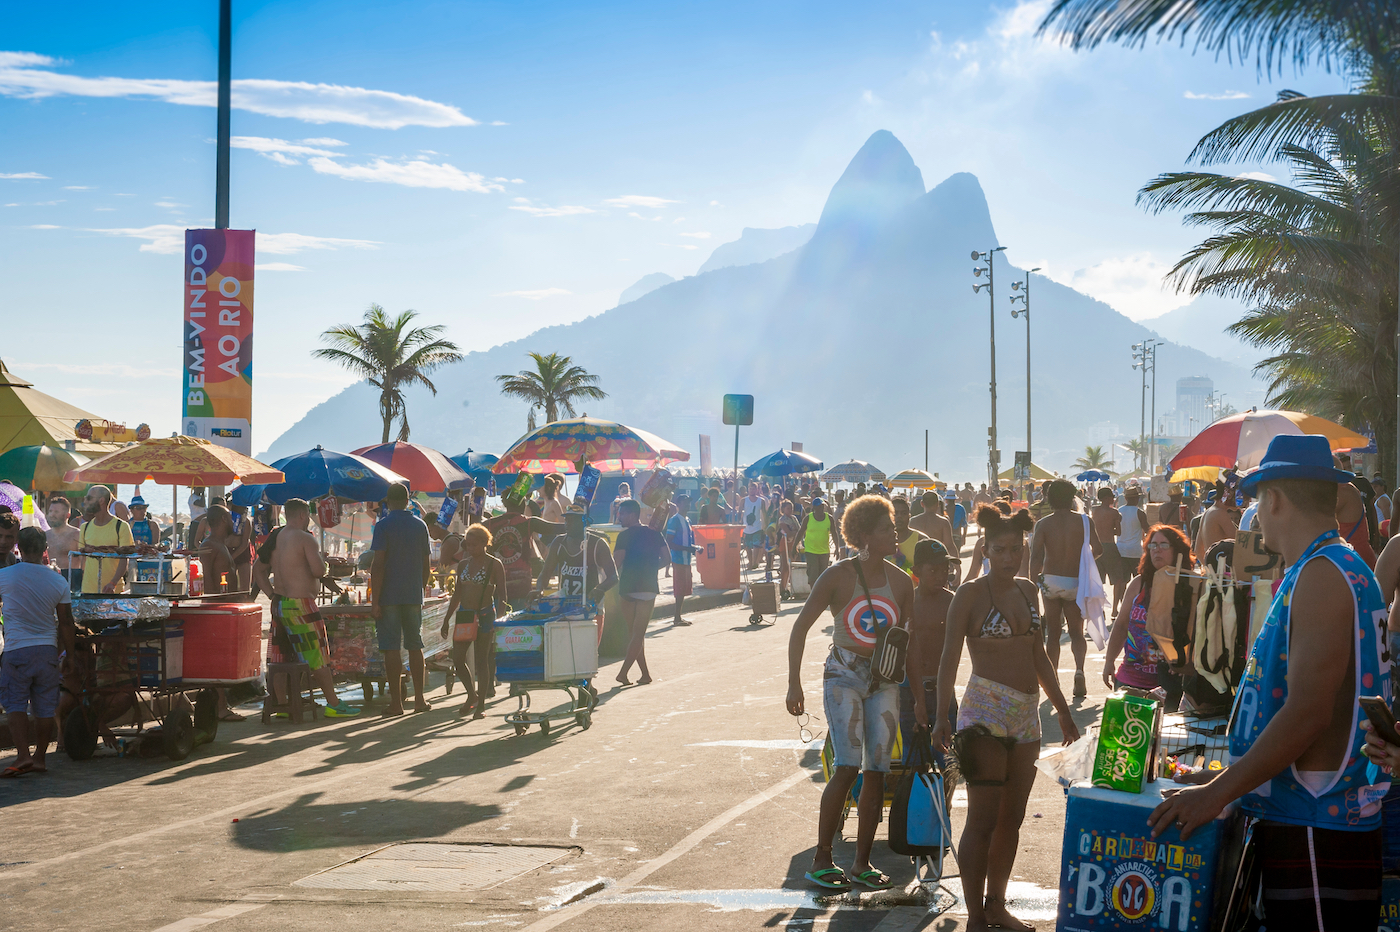 Boulevard Rio de Janeiro Brazilië tijdens carnaval